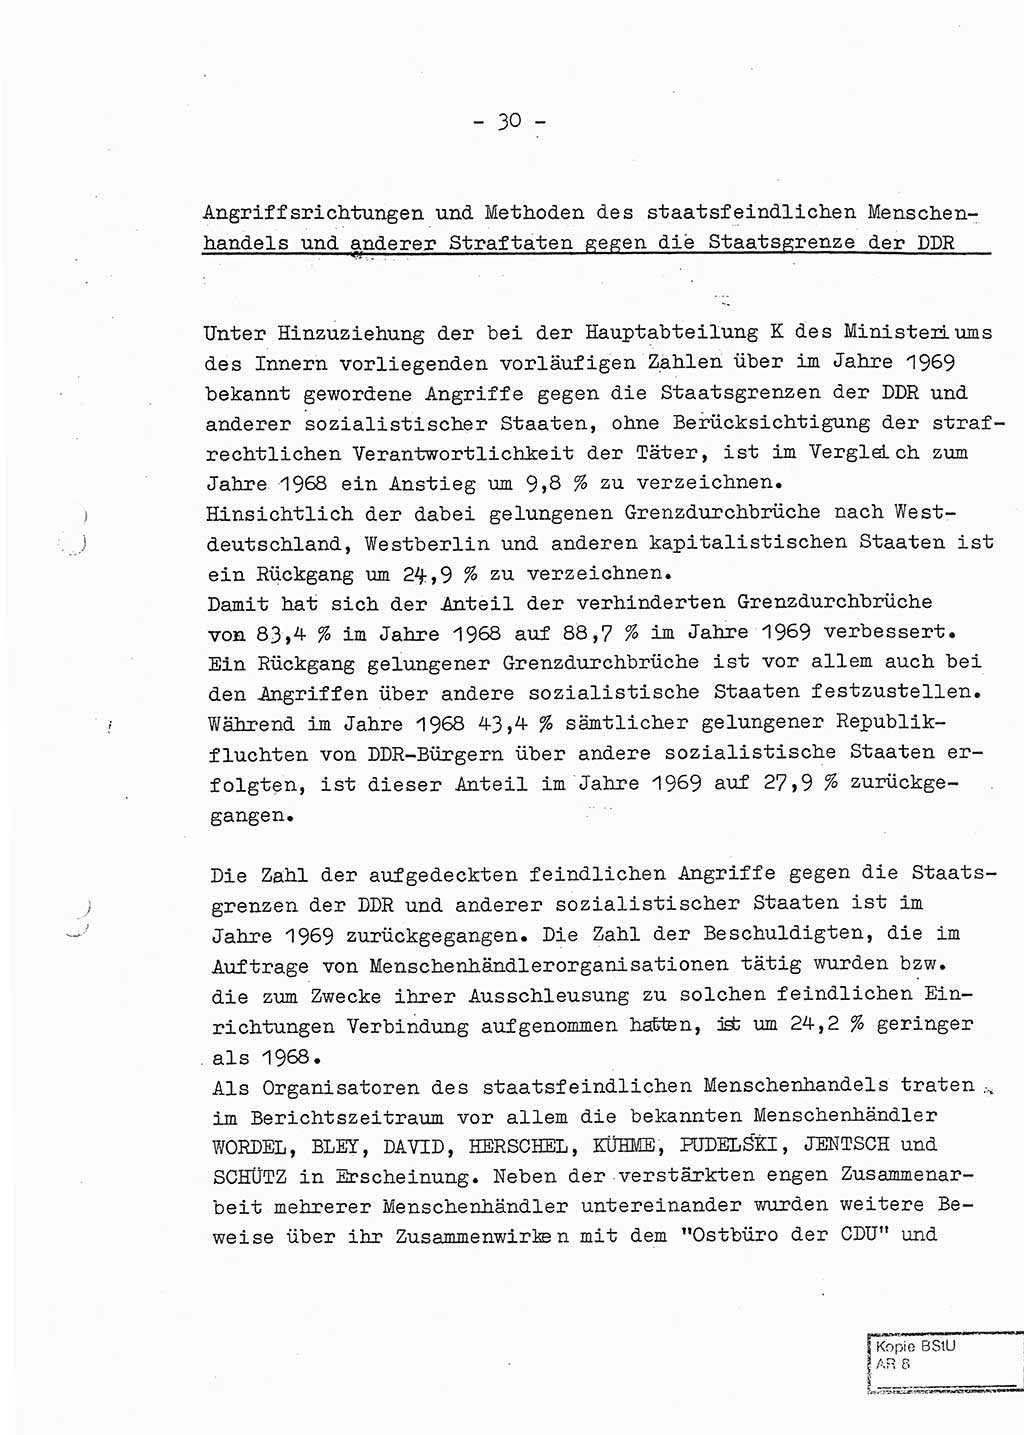 Jahresbericht der Hauptabteilung (HA) Ⅸ 1969 des Ministeriums für Staatssicherheit (MfS) der Deutschen Demokratischen Republik (DDR), Berlin 1970, Seite 30 (J.-Ber. MfS DDR HA Ⅸ /69 1970, S. 30)